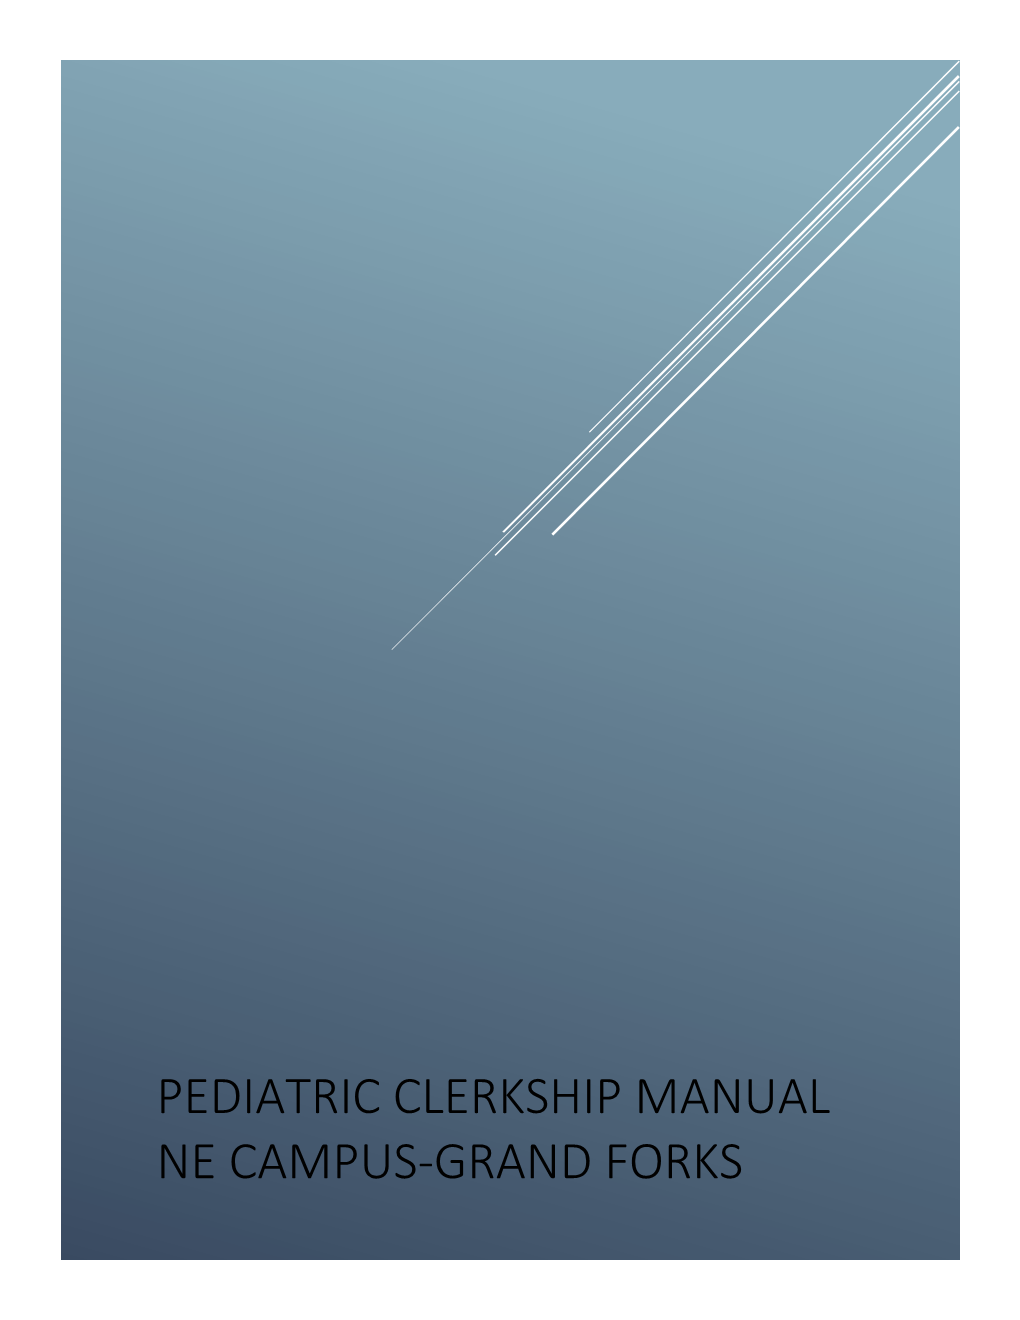 Pediatric Clerkship Manual Ne Campus-Grand Forks